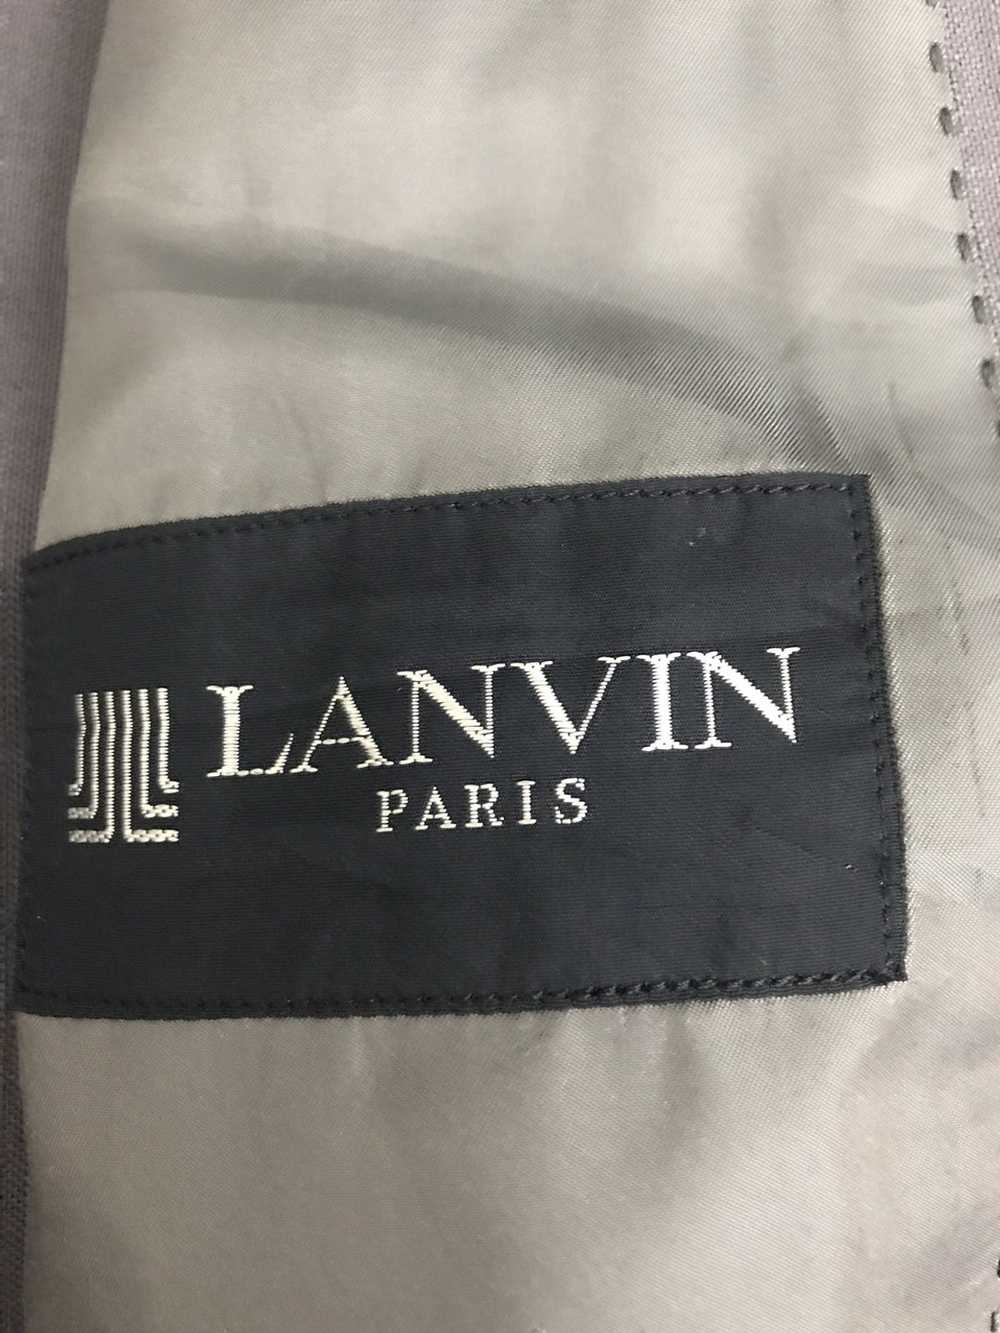 Lanvin Lanvin Paris Blazer - image 8